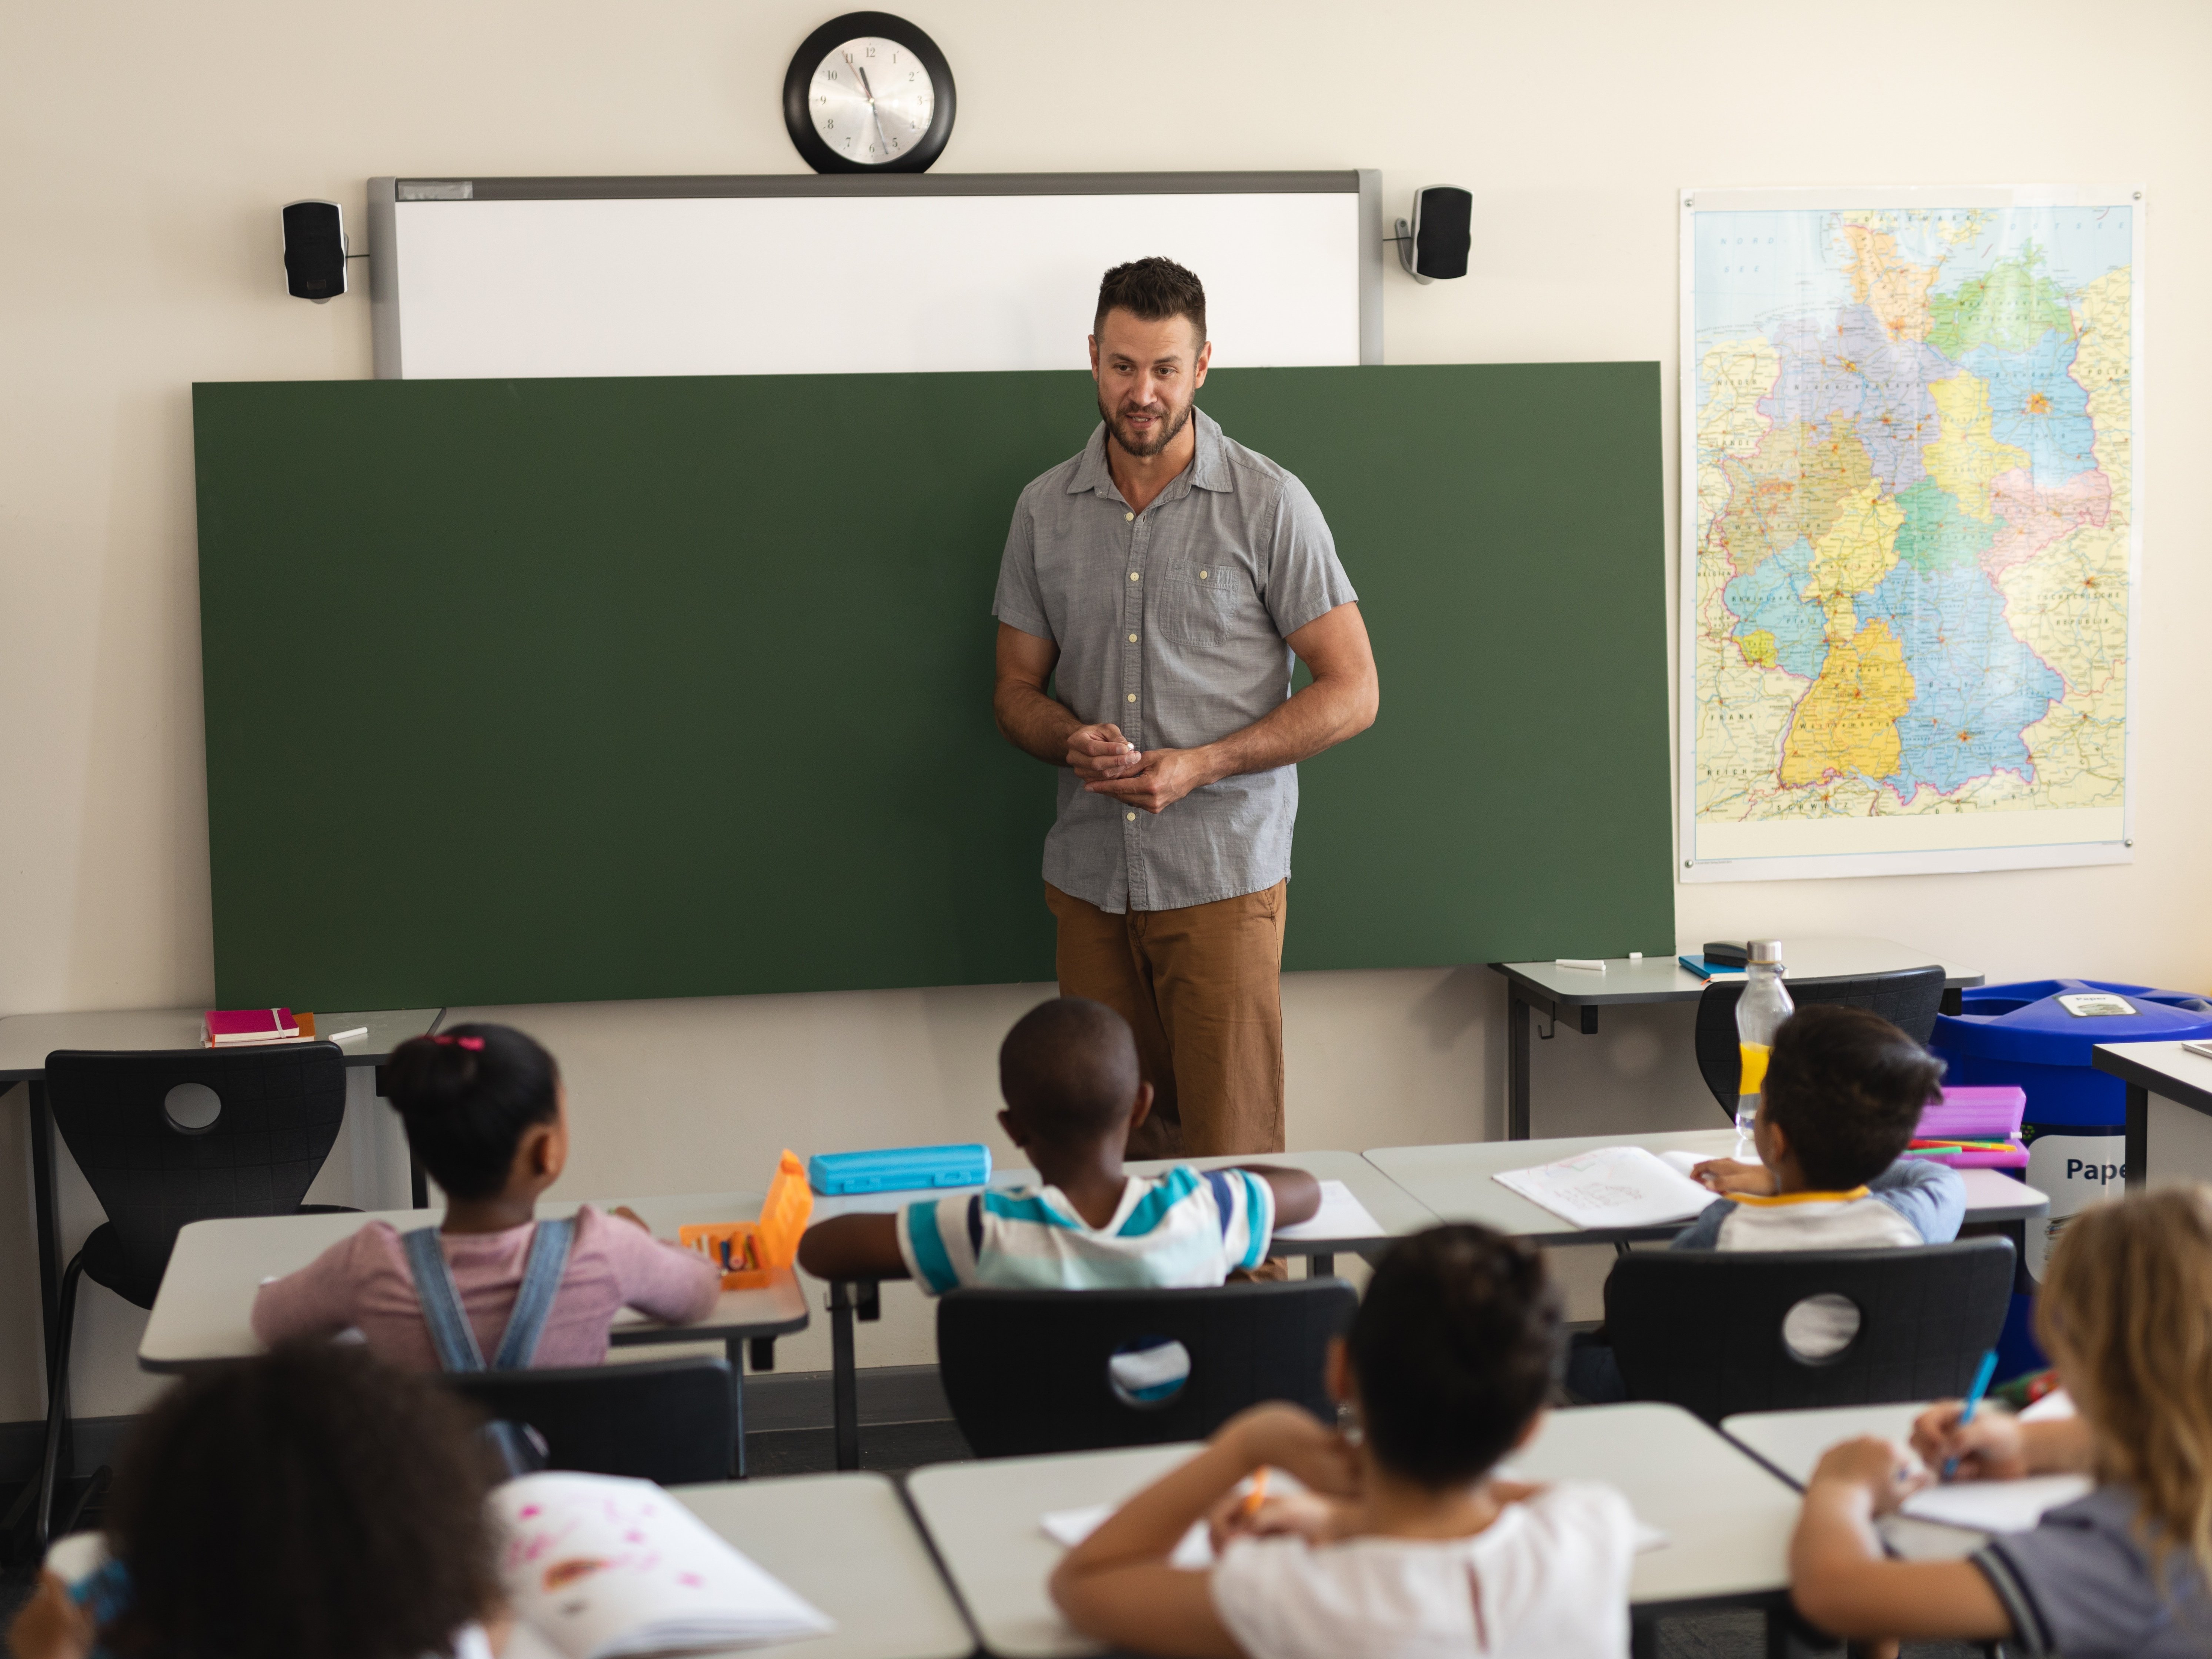 Lehrer steht vor leerer Tafel und spricht mit Grundschulkindern